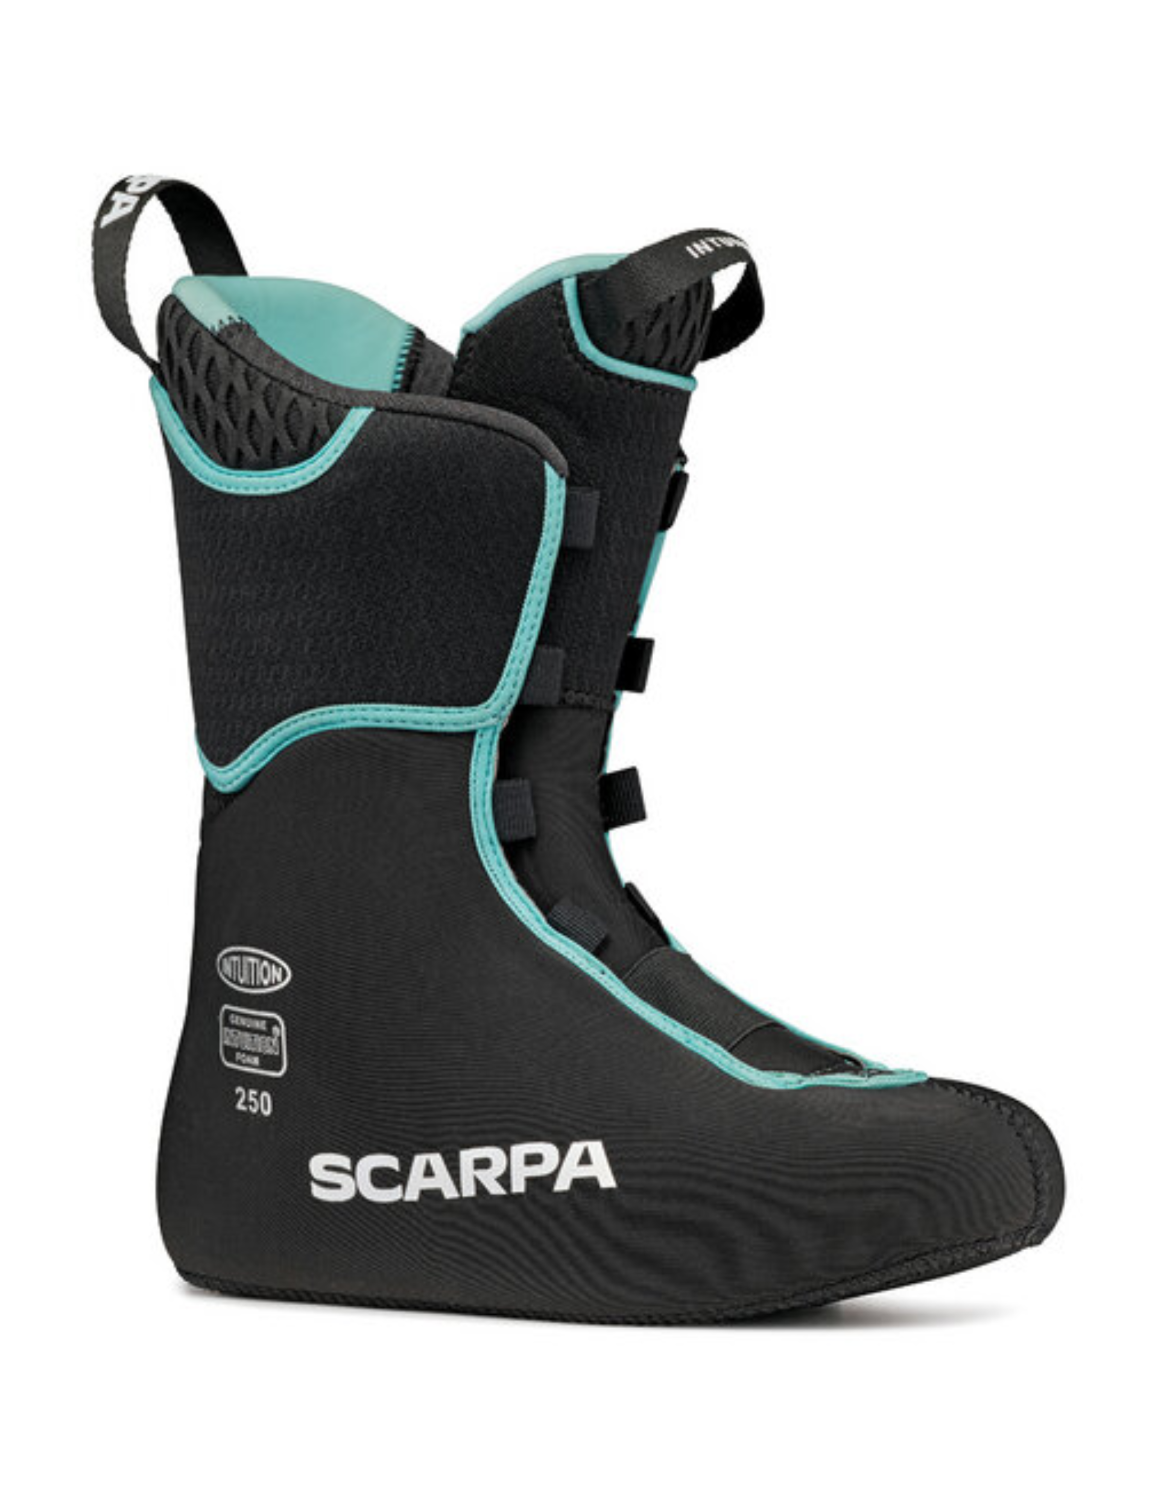 Chaussures de ski de randonnée SCARPA Gea pour femme : chausson grand confort